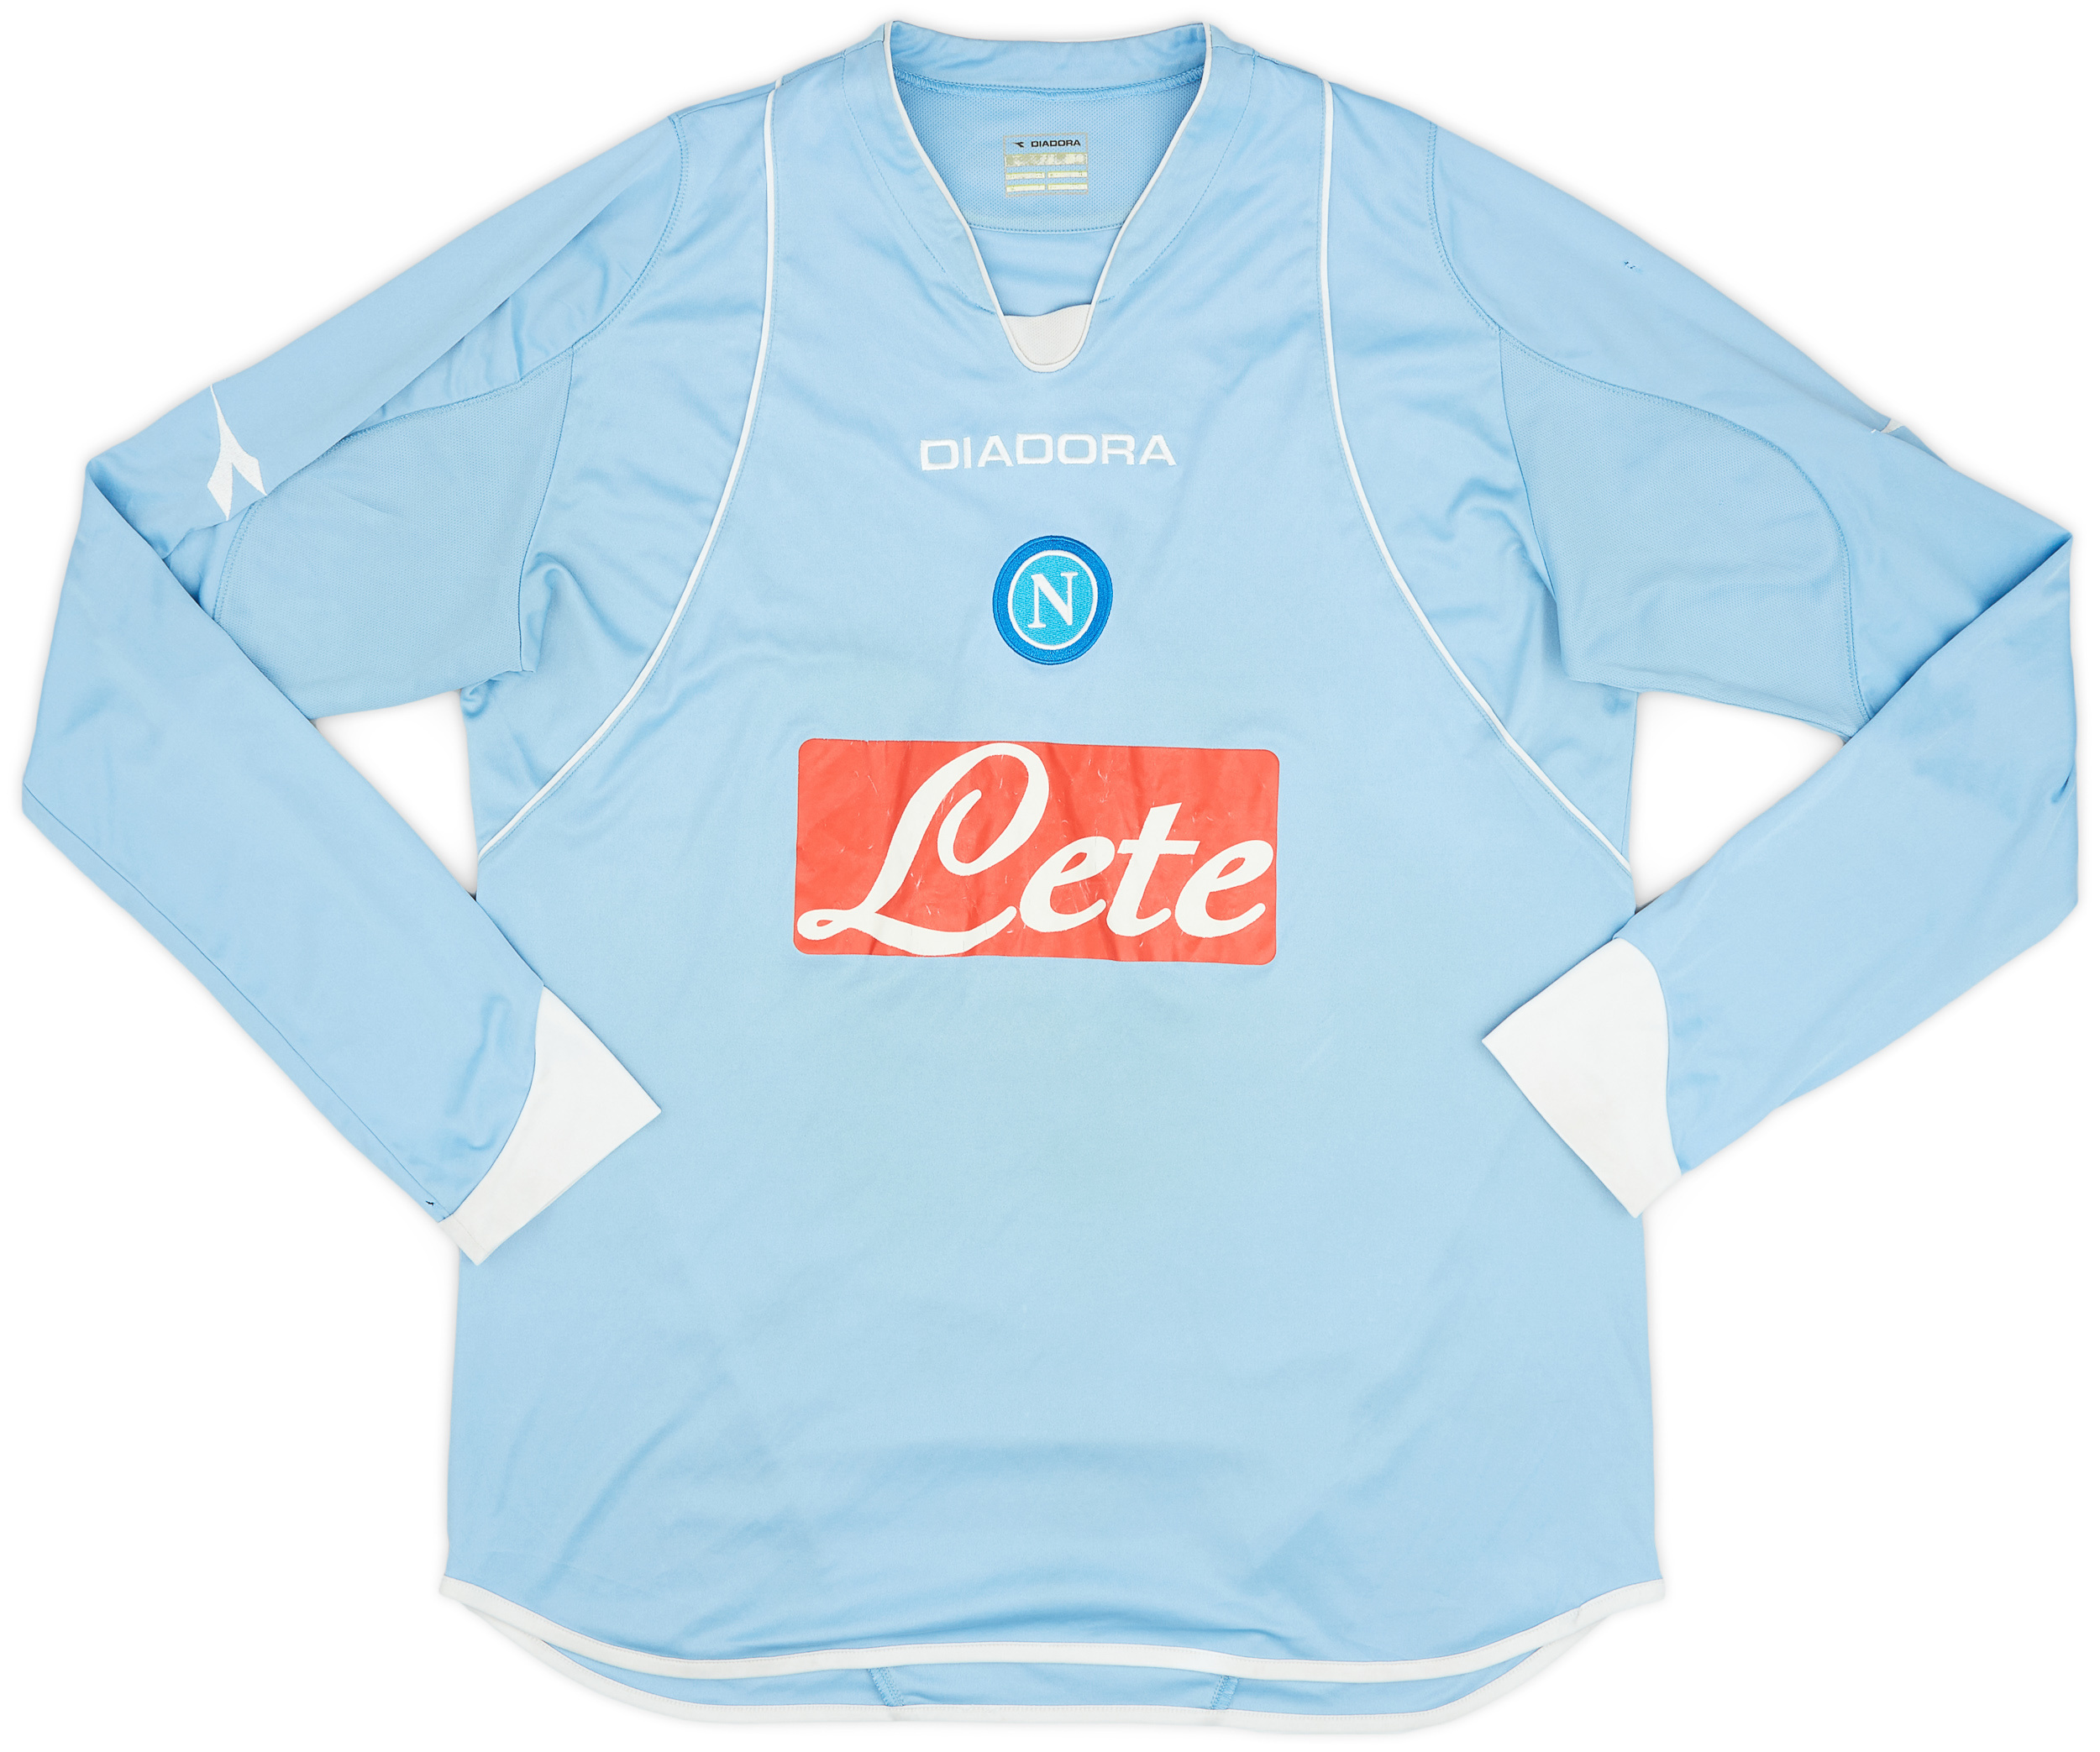 2007-08 Napoli Home Shirt - 5/10 - ()